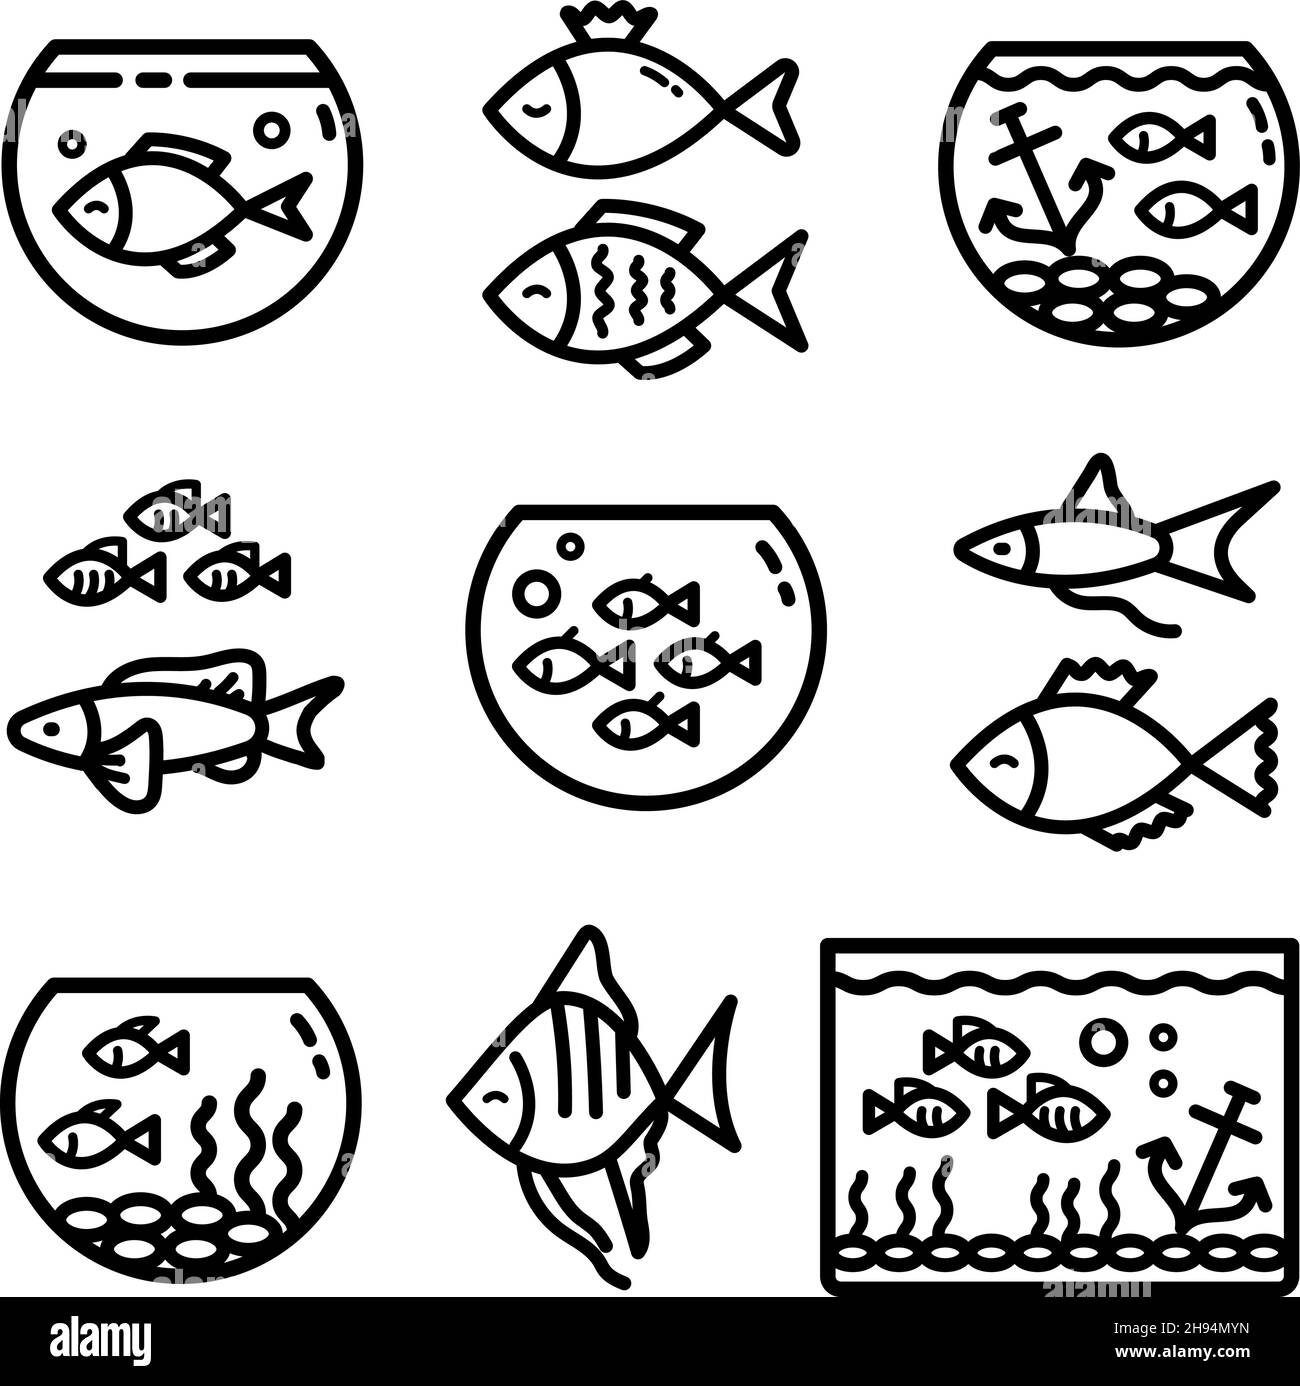 Acquari carri armati contorno icone set, diversi tipi di acquari con piante e pesci. Illustrazioni vettoriali isolate su bianco. Illustrazione Vettoriale